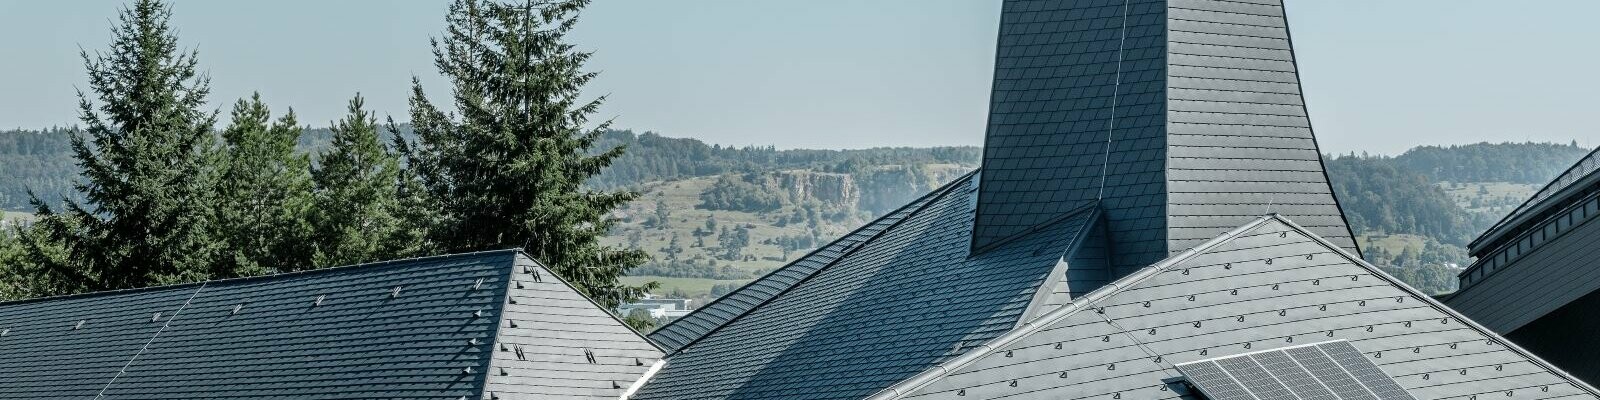 Das verwinkelte Dach der Waldorfschule Heidenheim konnte mit den flexiblen Dachschindeln von PREFA optimal eingedeckt werden